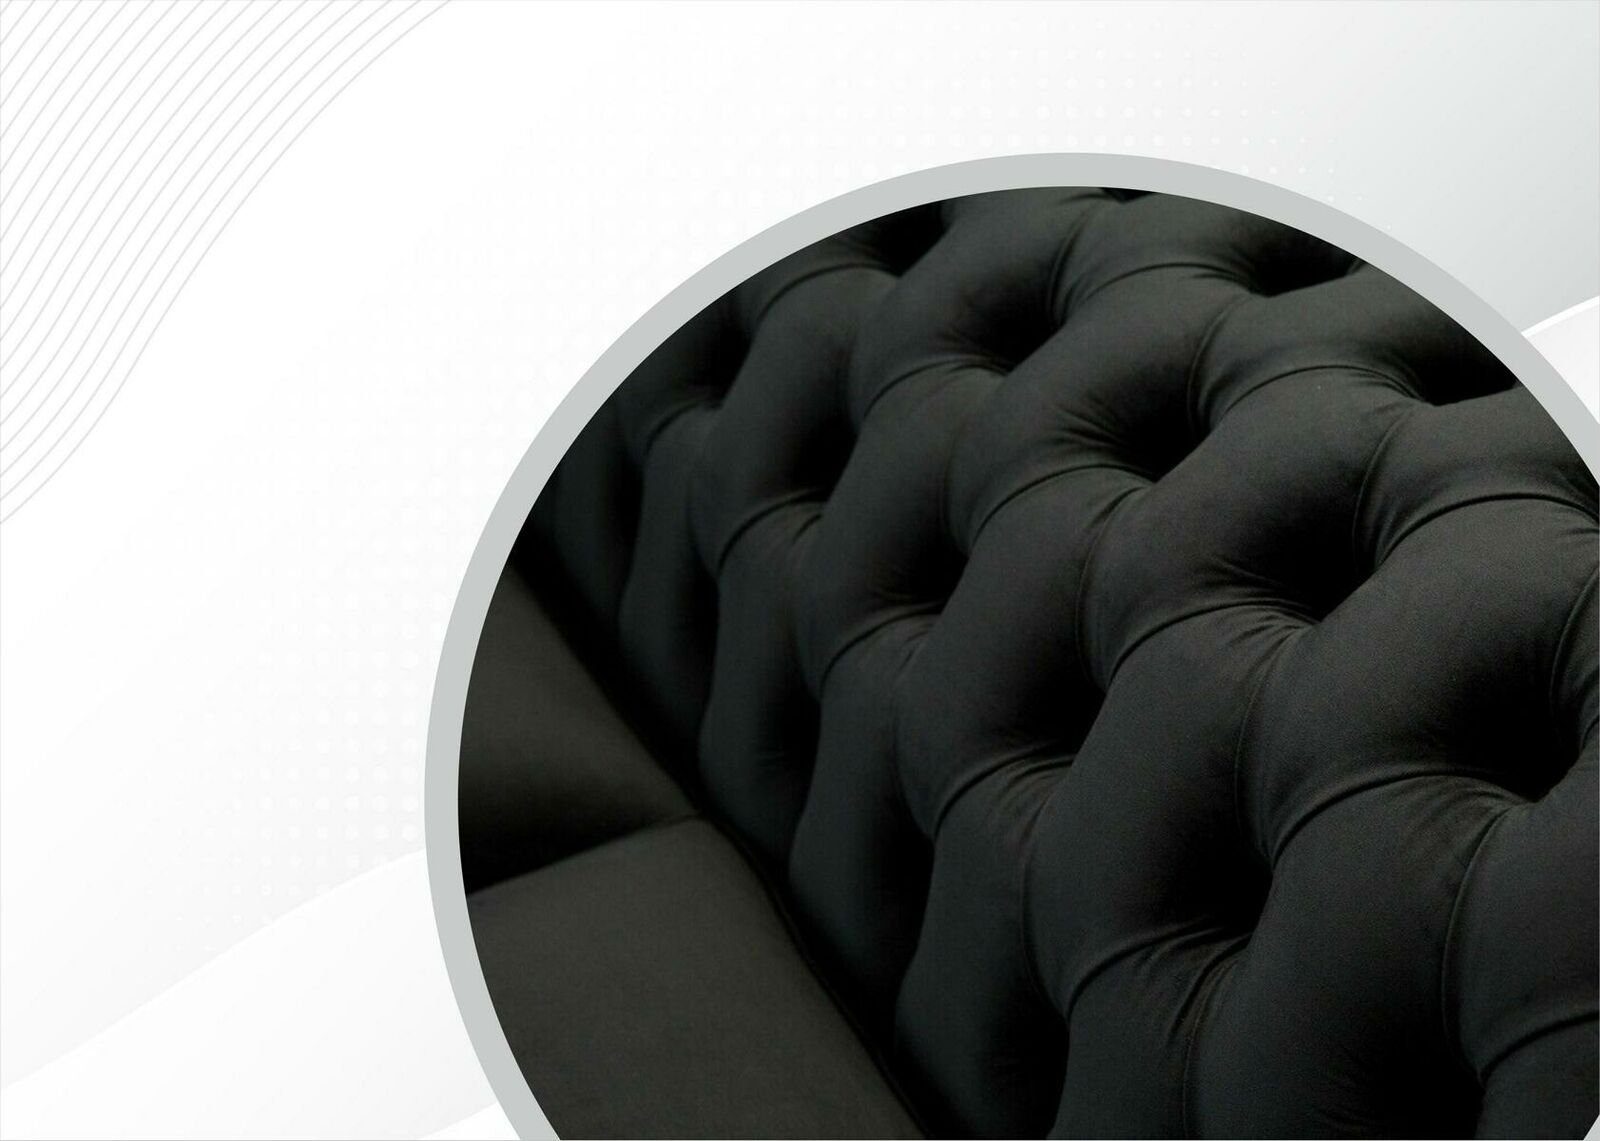 Polster Design Möbel luxus Made JVmoebel Chesterfield Europe Zweisitzer in Neu, Sofa Schwarzer